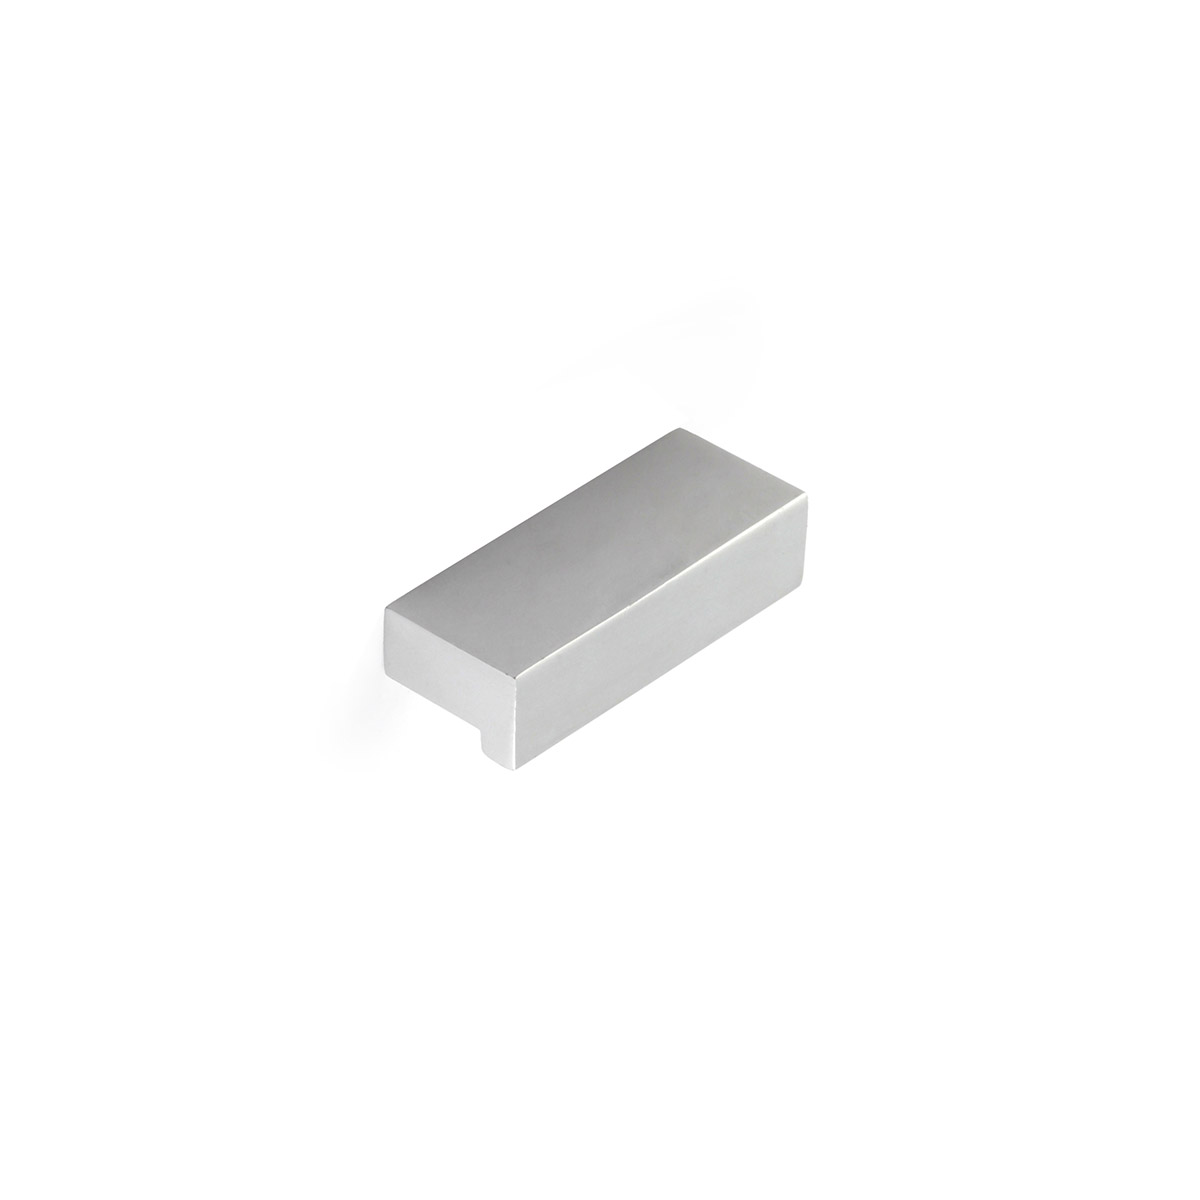 Poignée en aluminium avec finition anodisée mat, dimensions: 44x12x18mm et inserts: 32mm